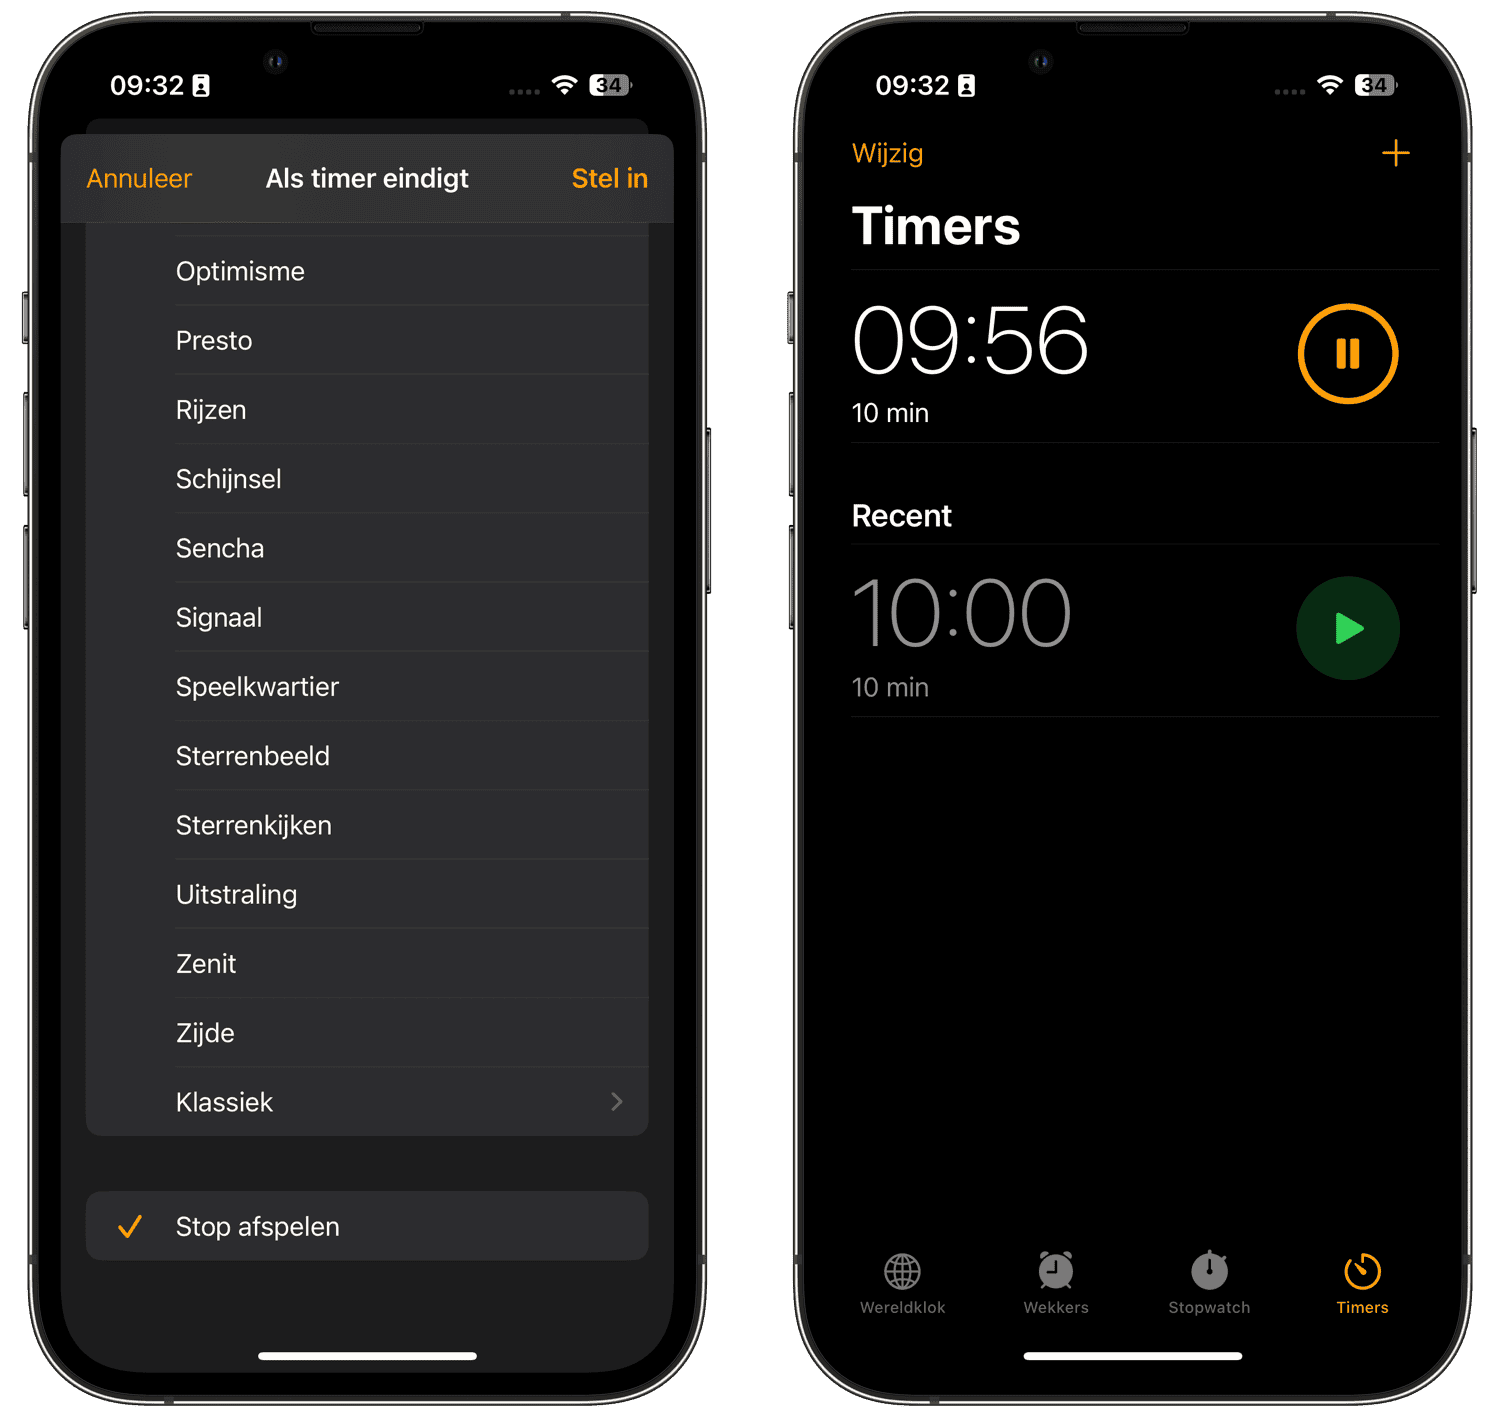 Slaaptimer op iPhone: stop met afspelen van muziek als timer afloopt